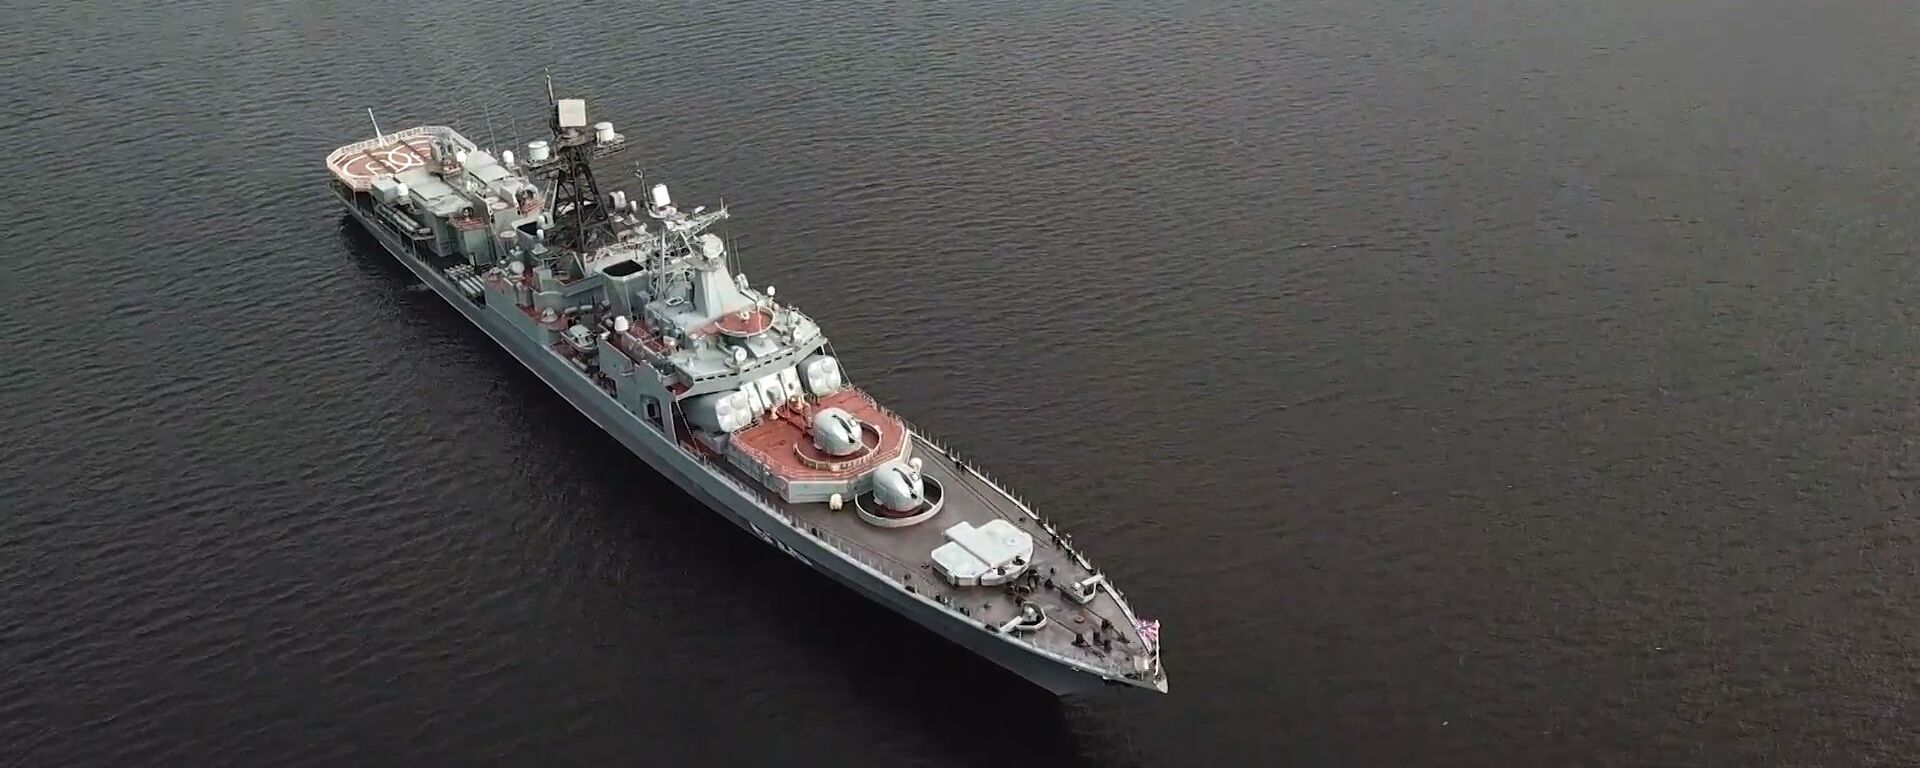 На видео сняли прибытие боевых кораблей для участия в параде ВМФ России - Sputnik Латвия, 1920, 15.07.2020